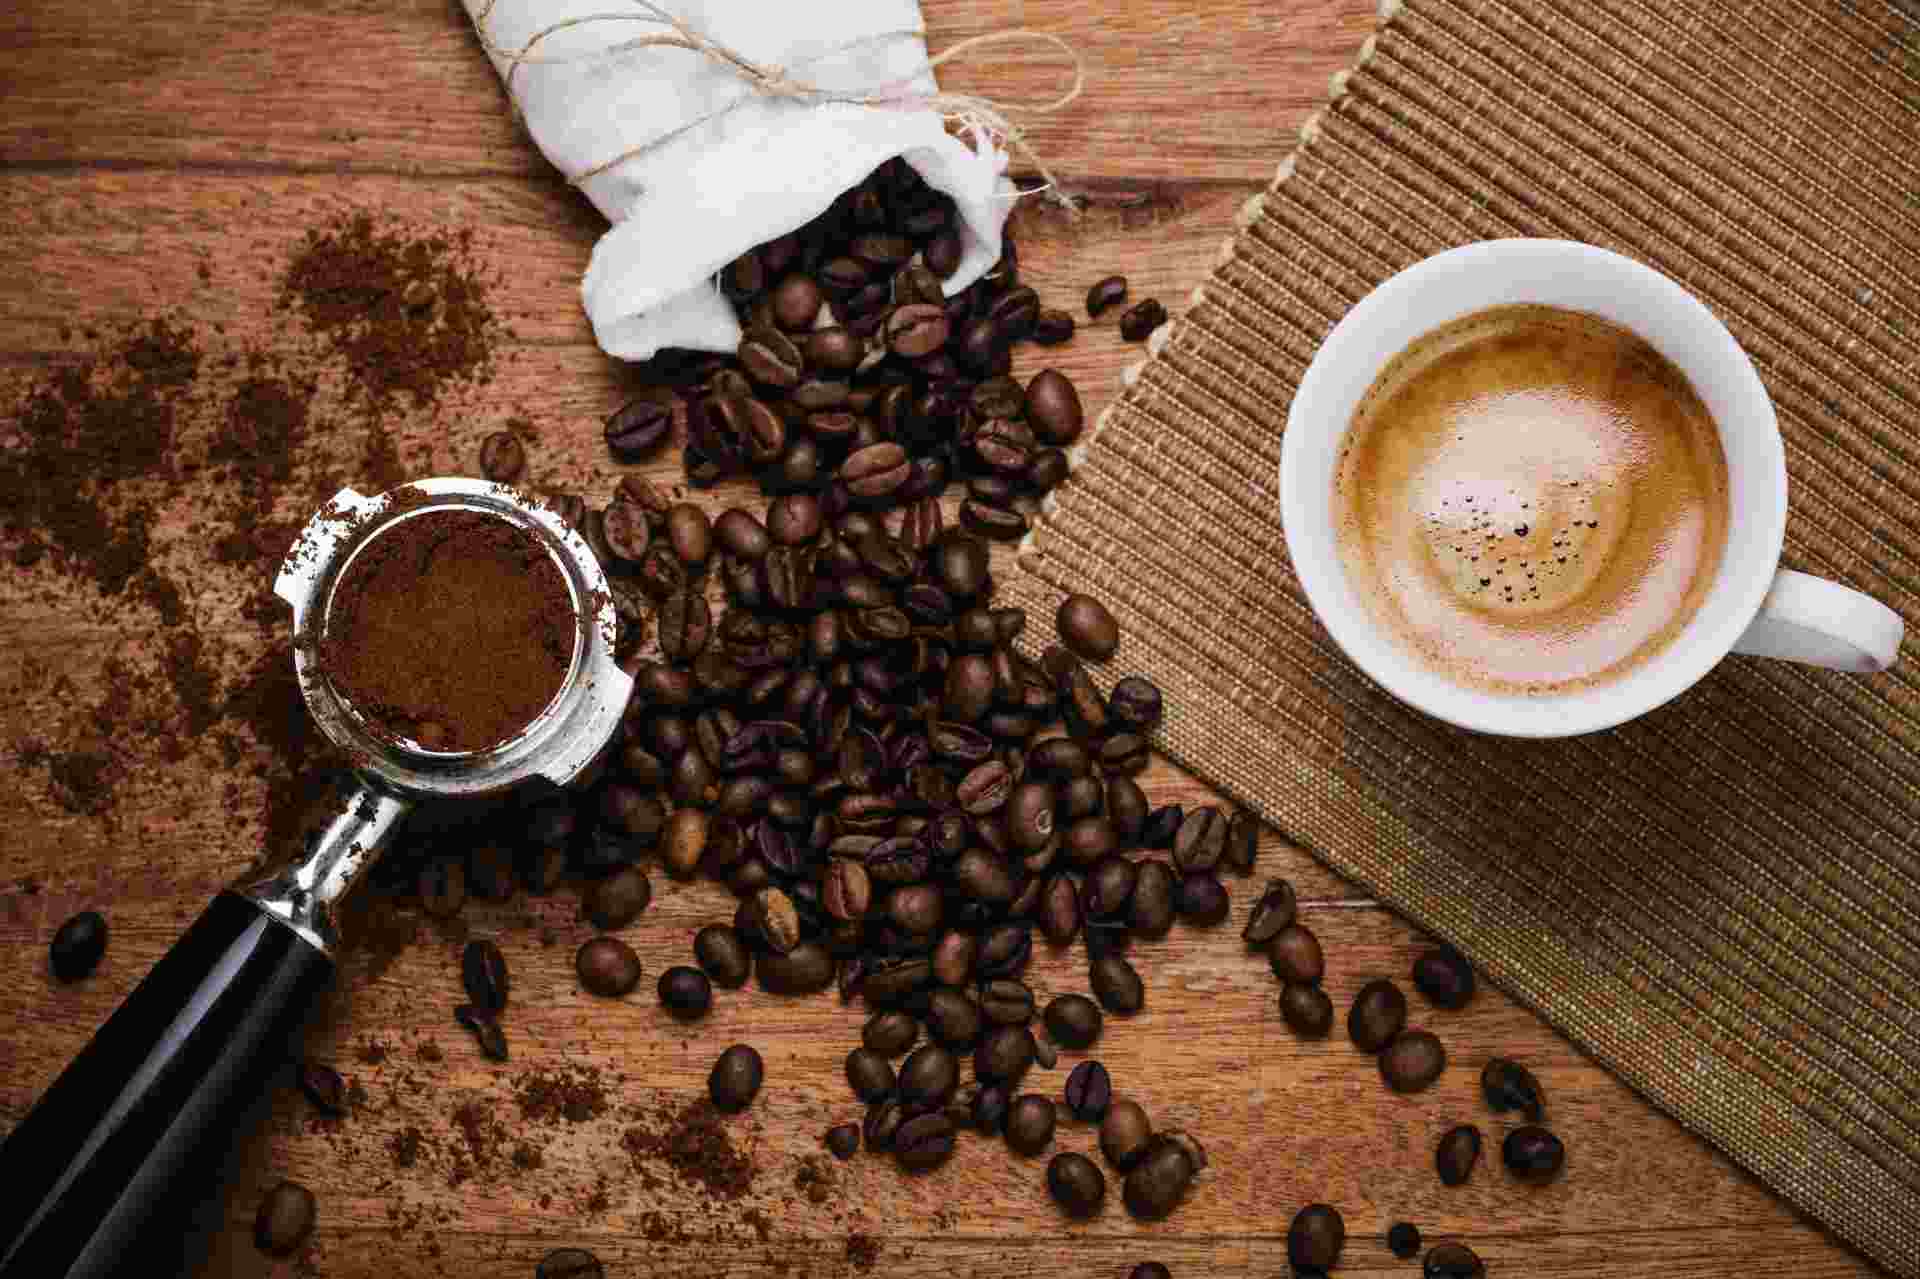 Kaffee kochen lecker Espressokocher Anleitung Kaffeebohnen malen